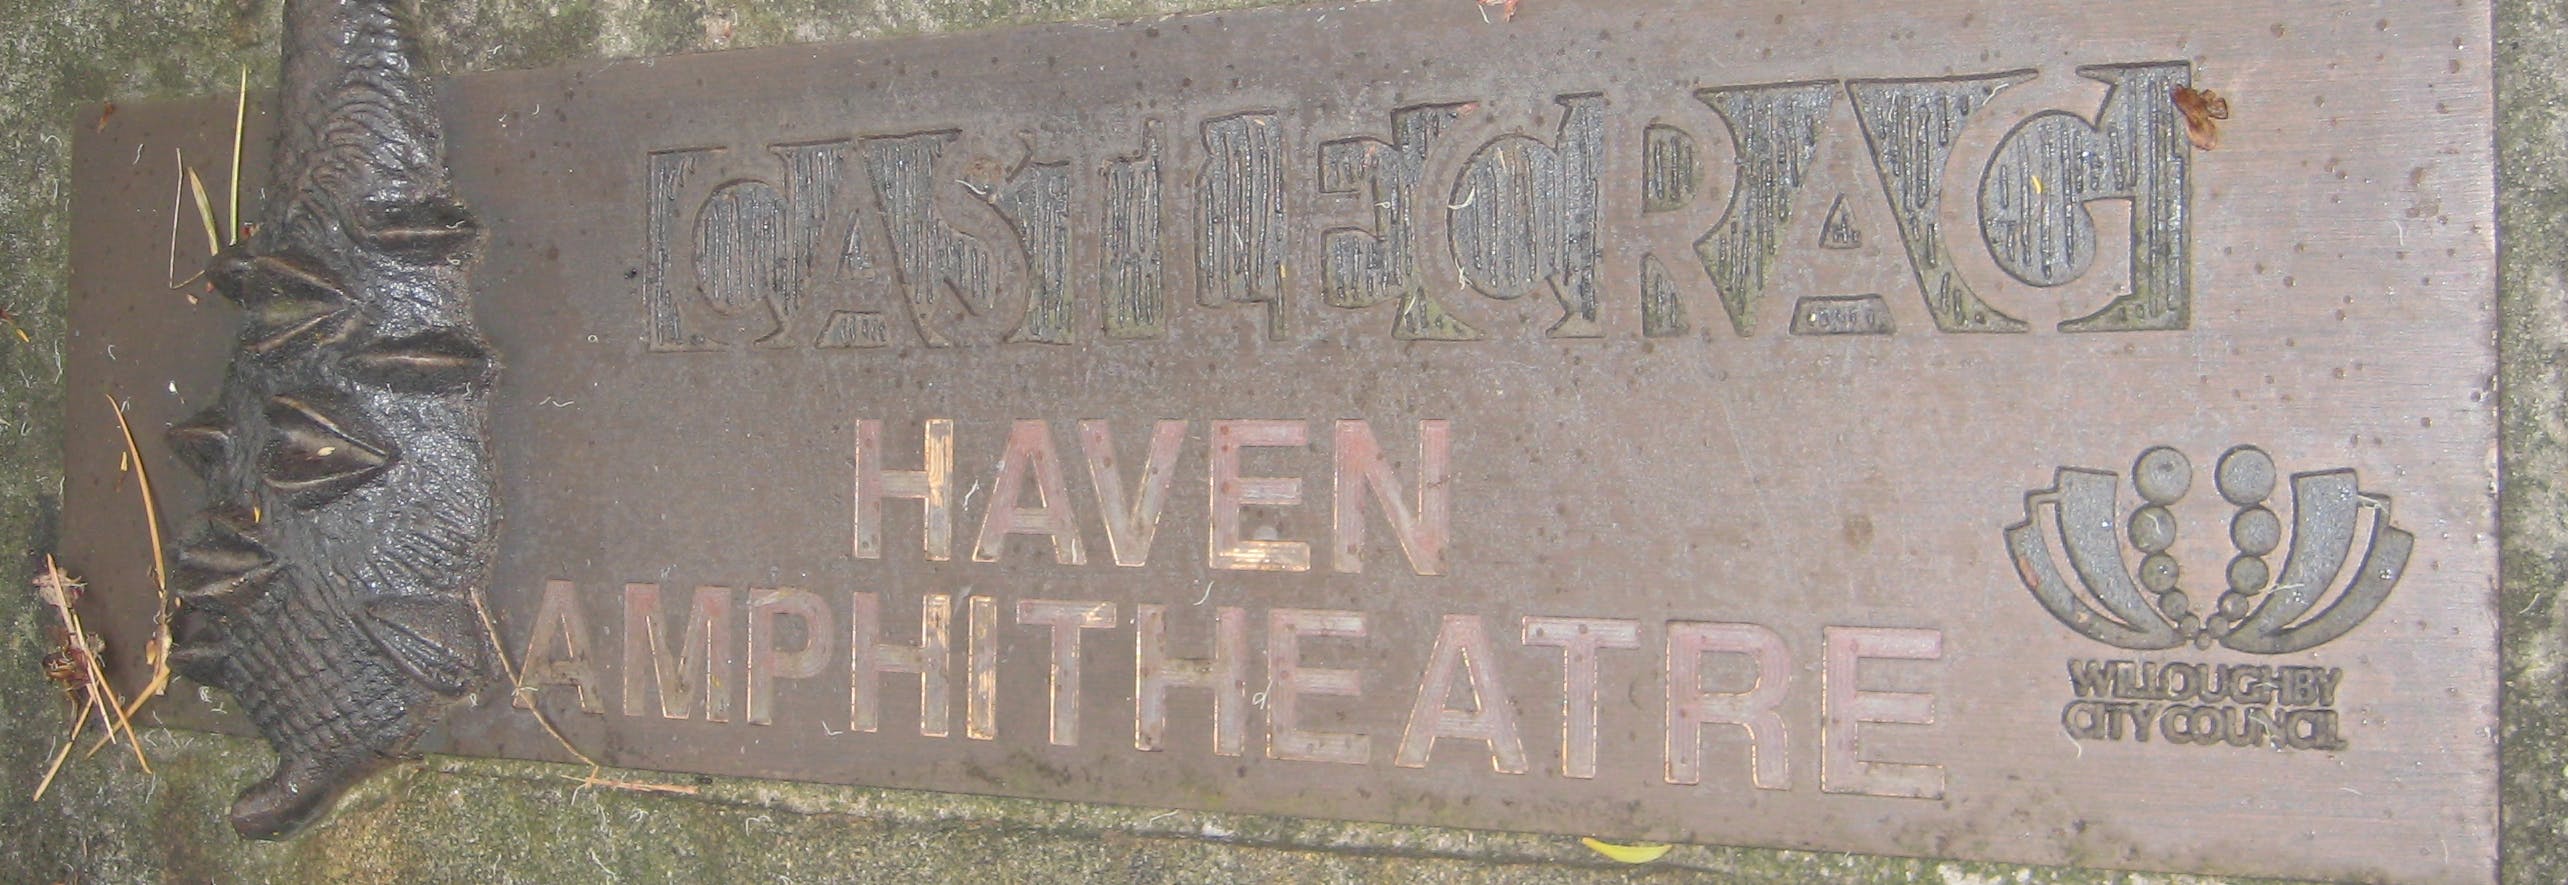 The Haven Amphitheatre Plaque 